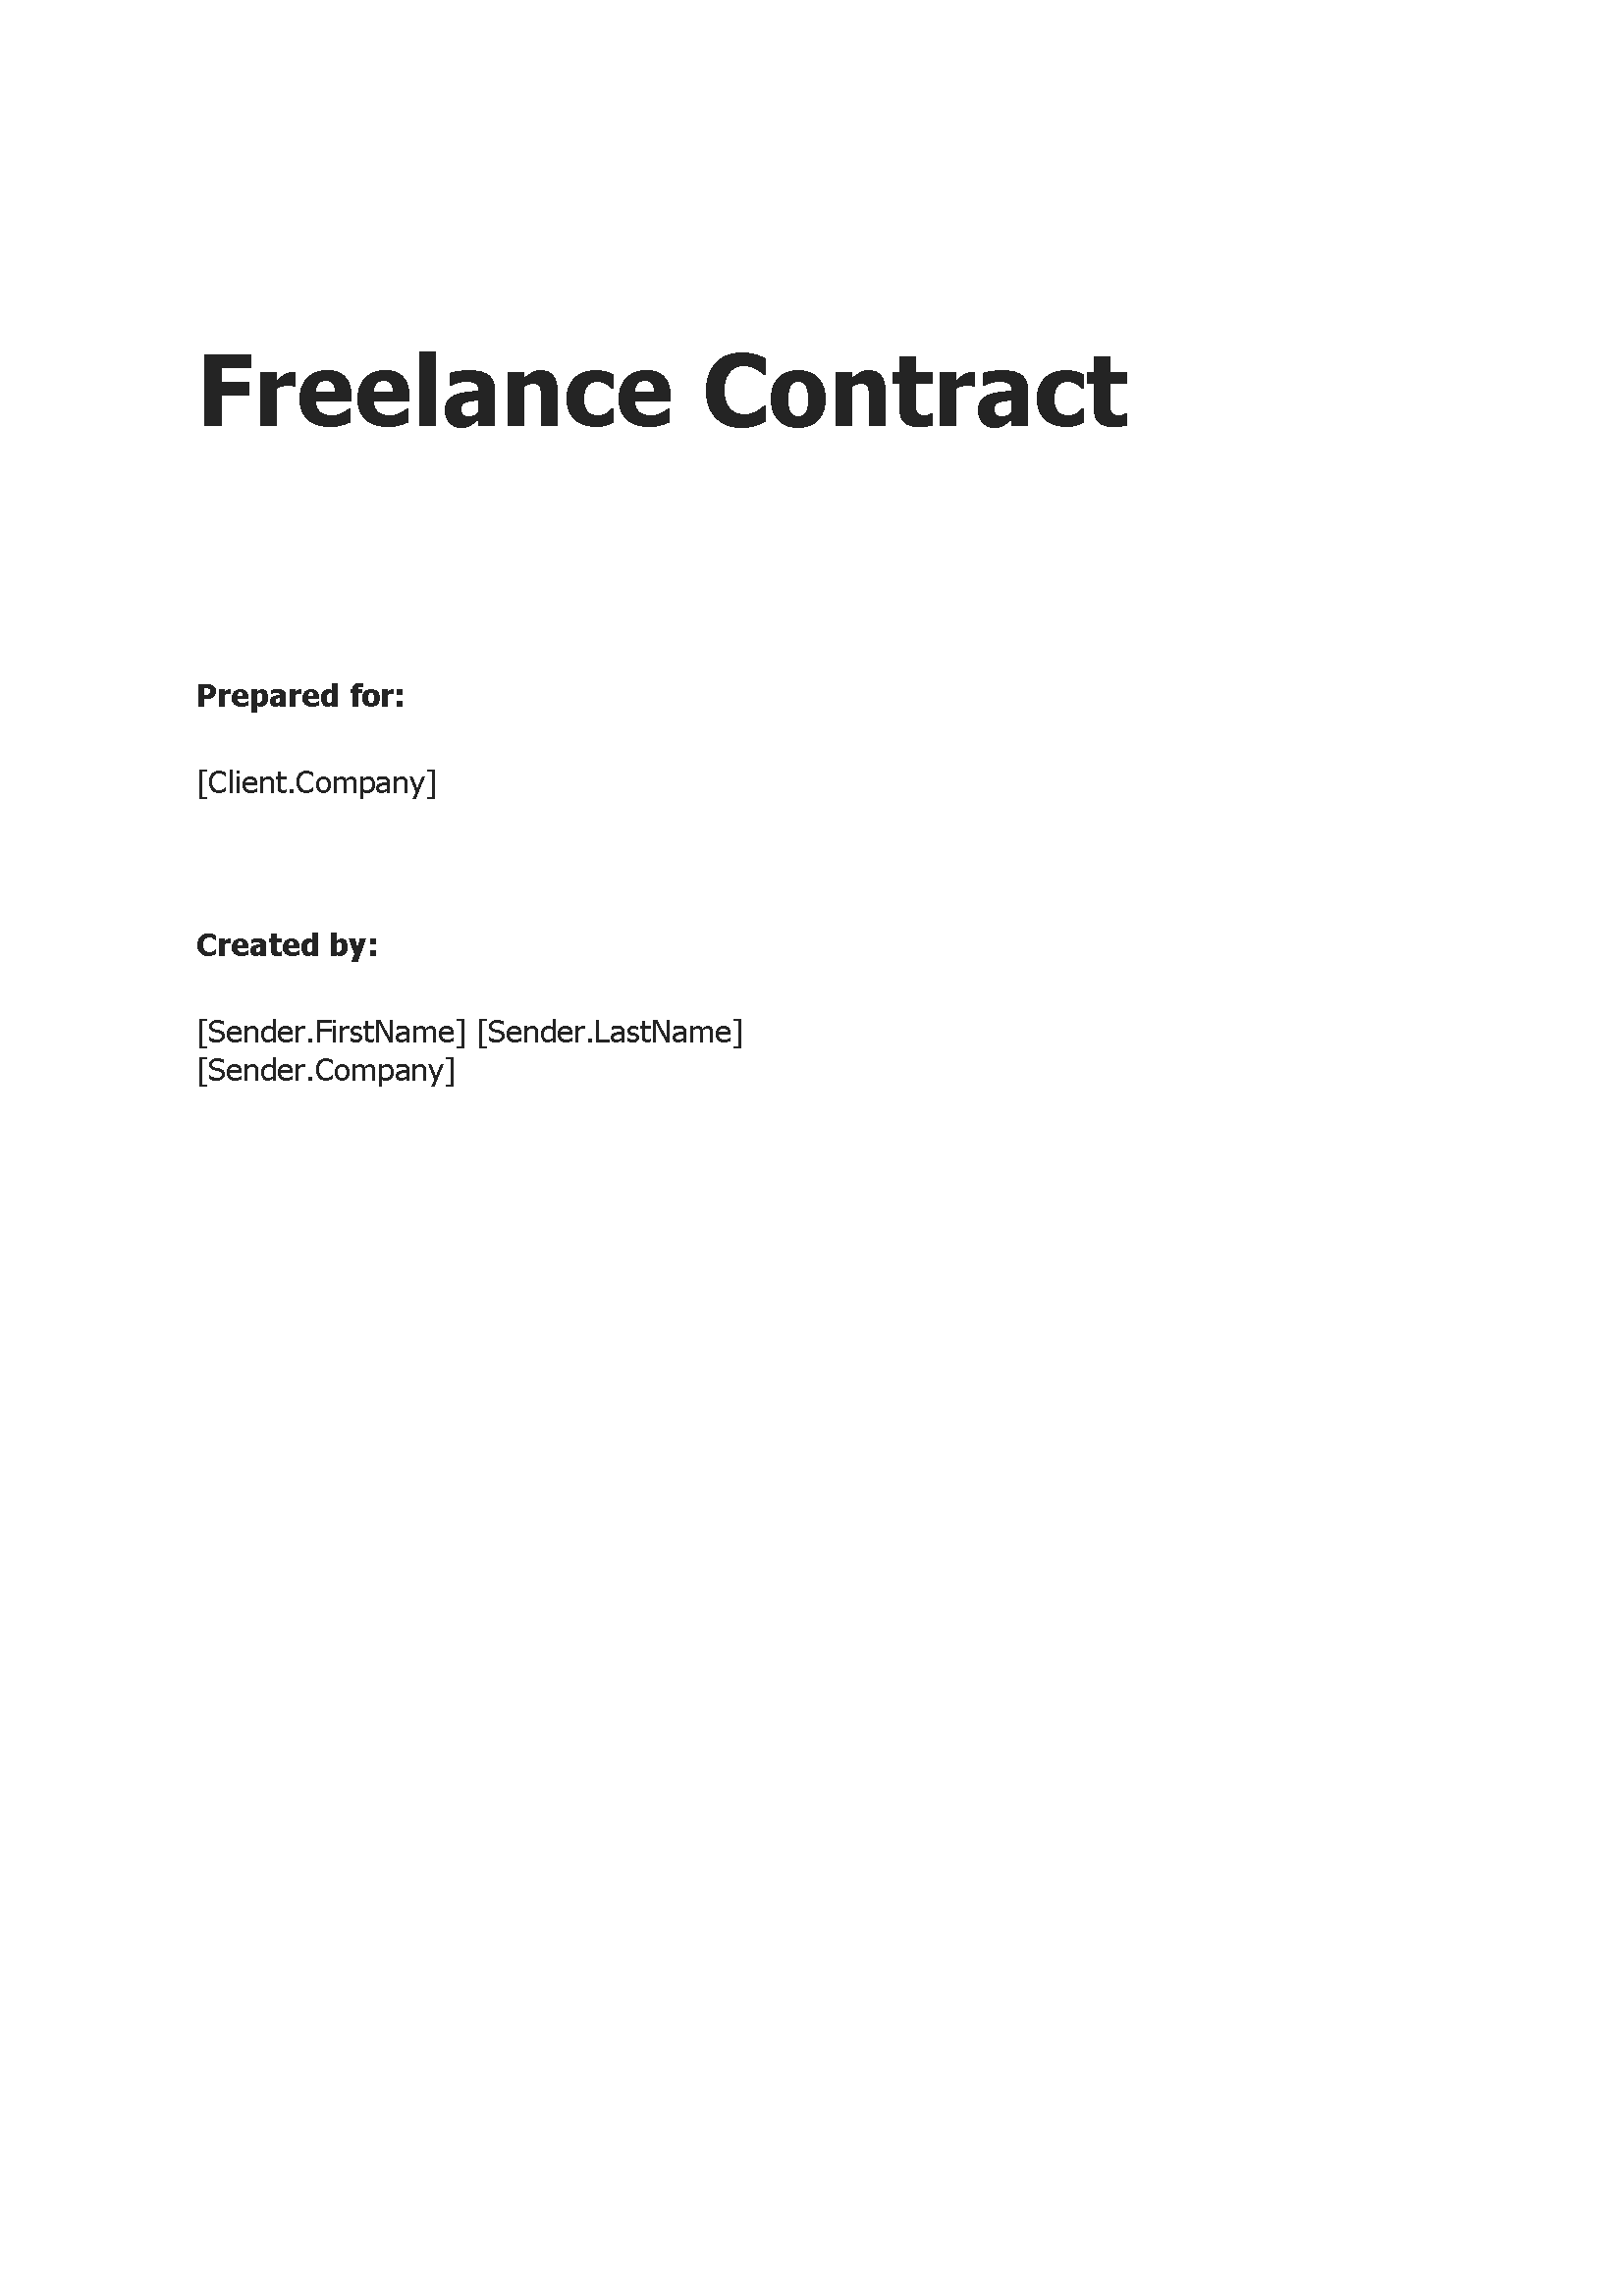 Freelance Contract Development